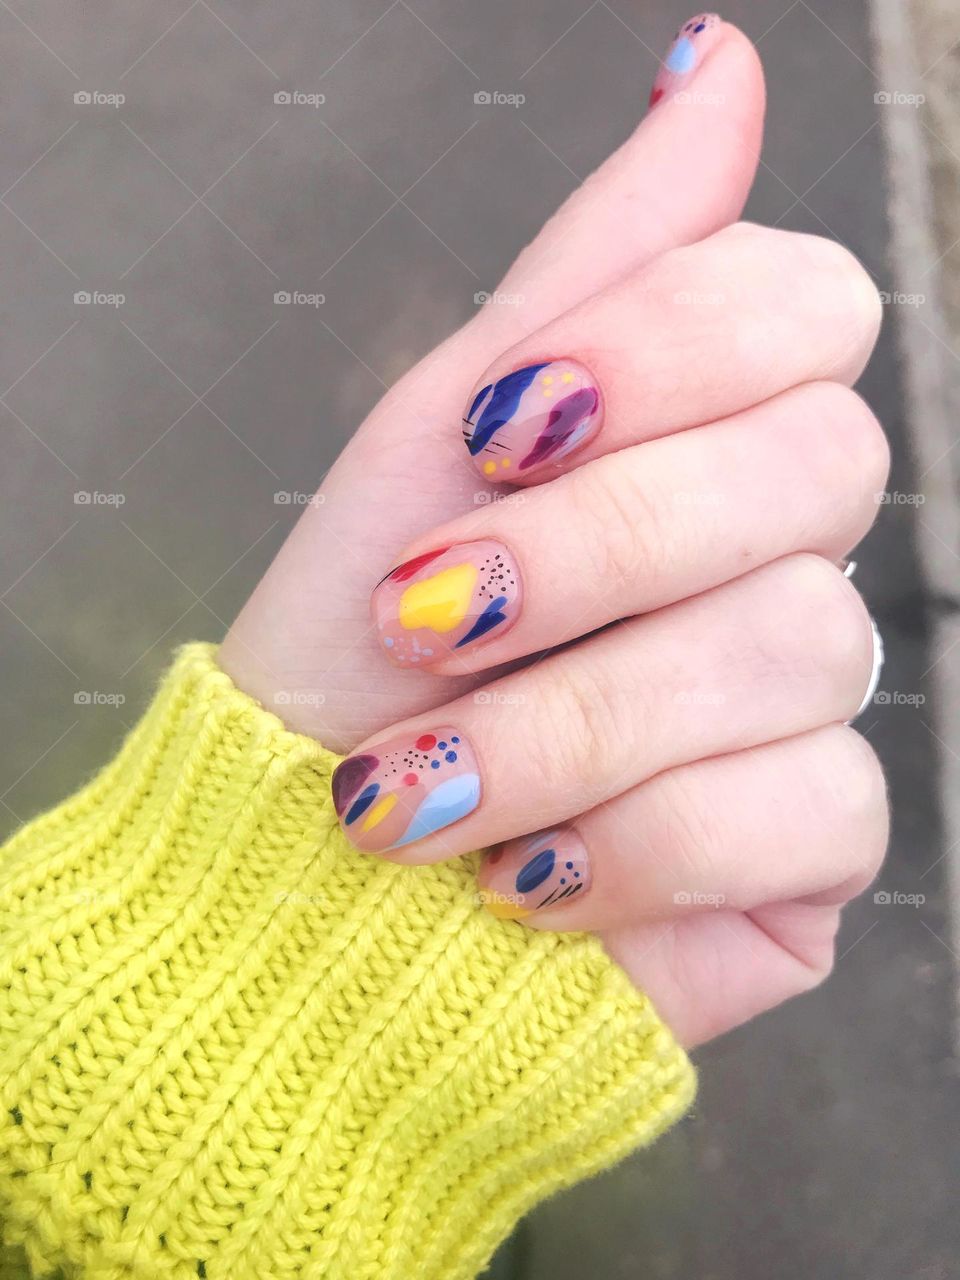 Manicure. Beautiful nails